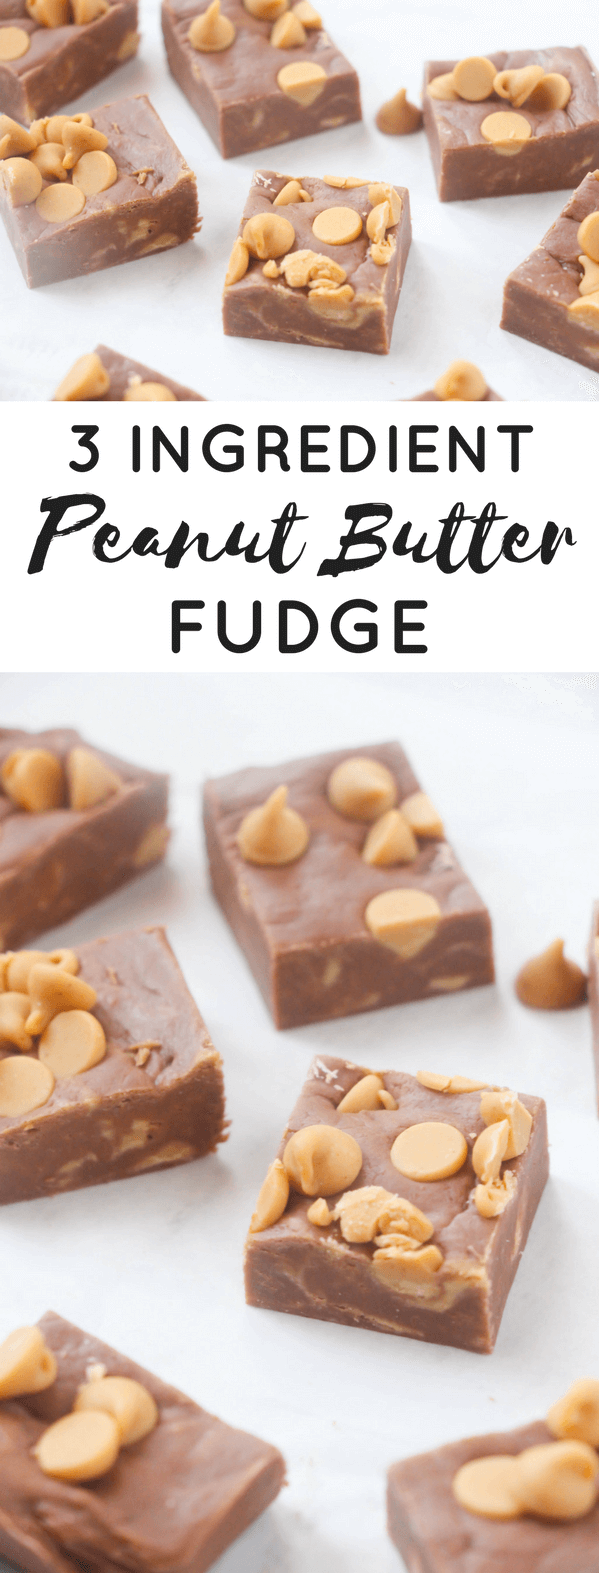 3 Ingredient Peanut Butter Fudge Pin image.